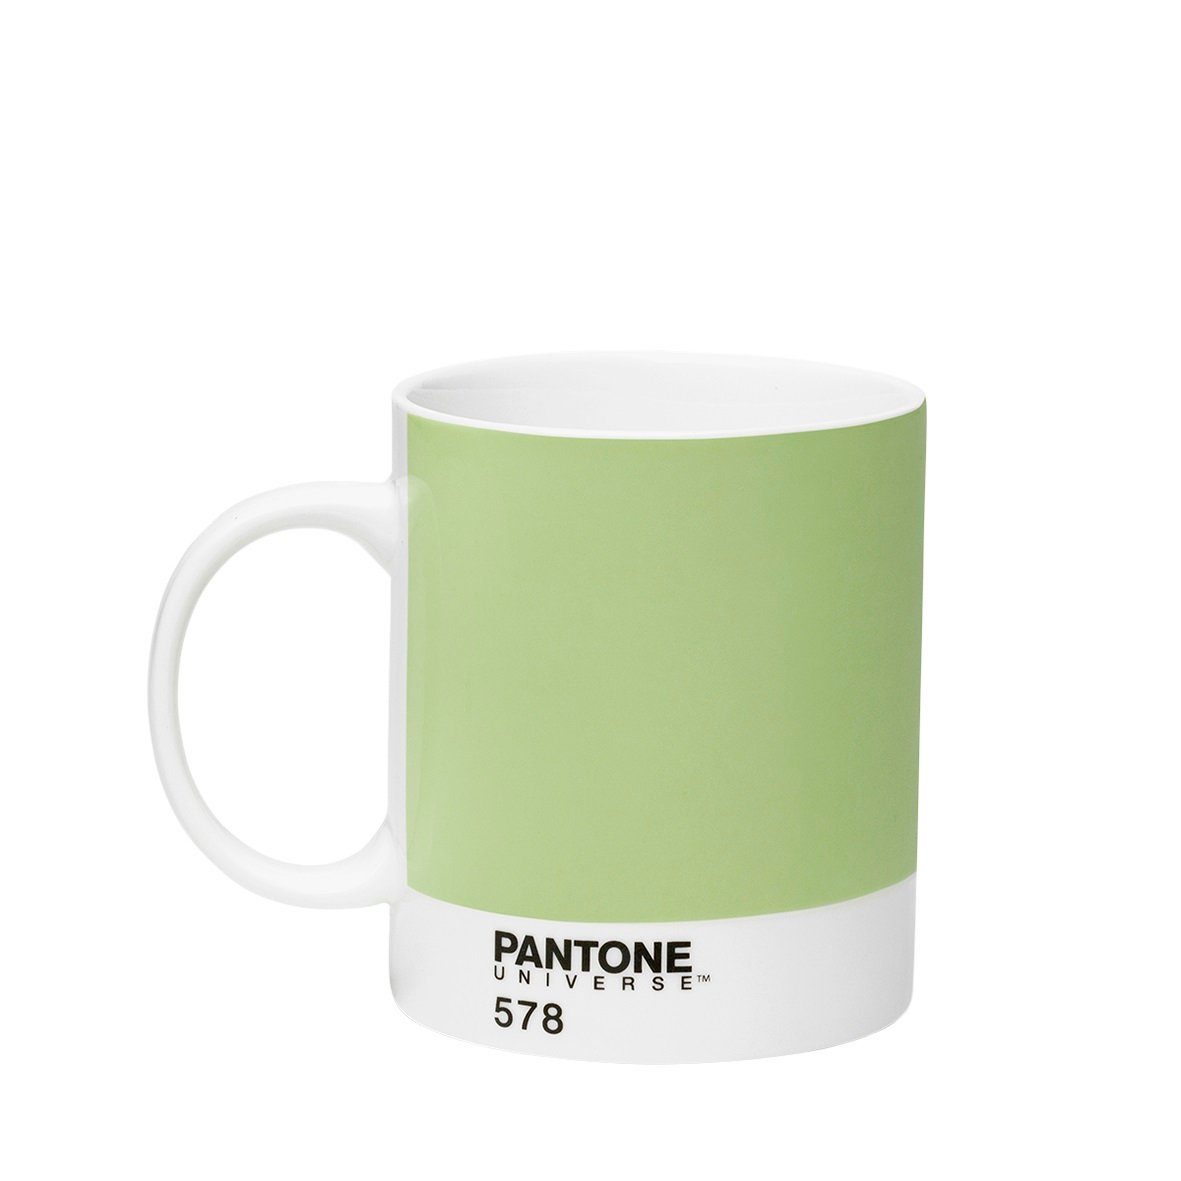 PANTONE Kaffeeservice, Porzellan Kaffeebecher, 375ml Light Green 578